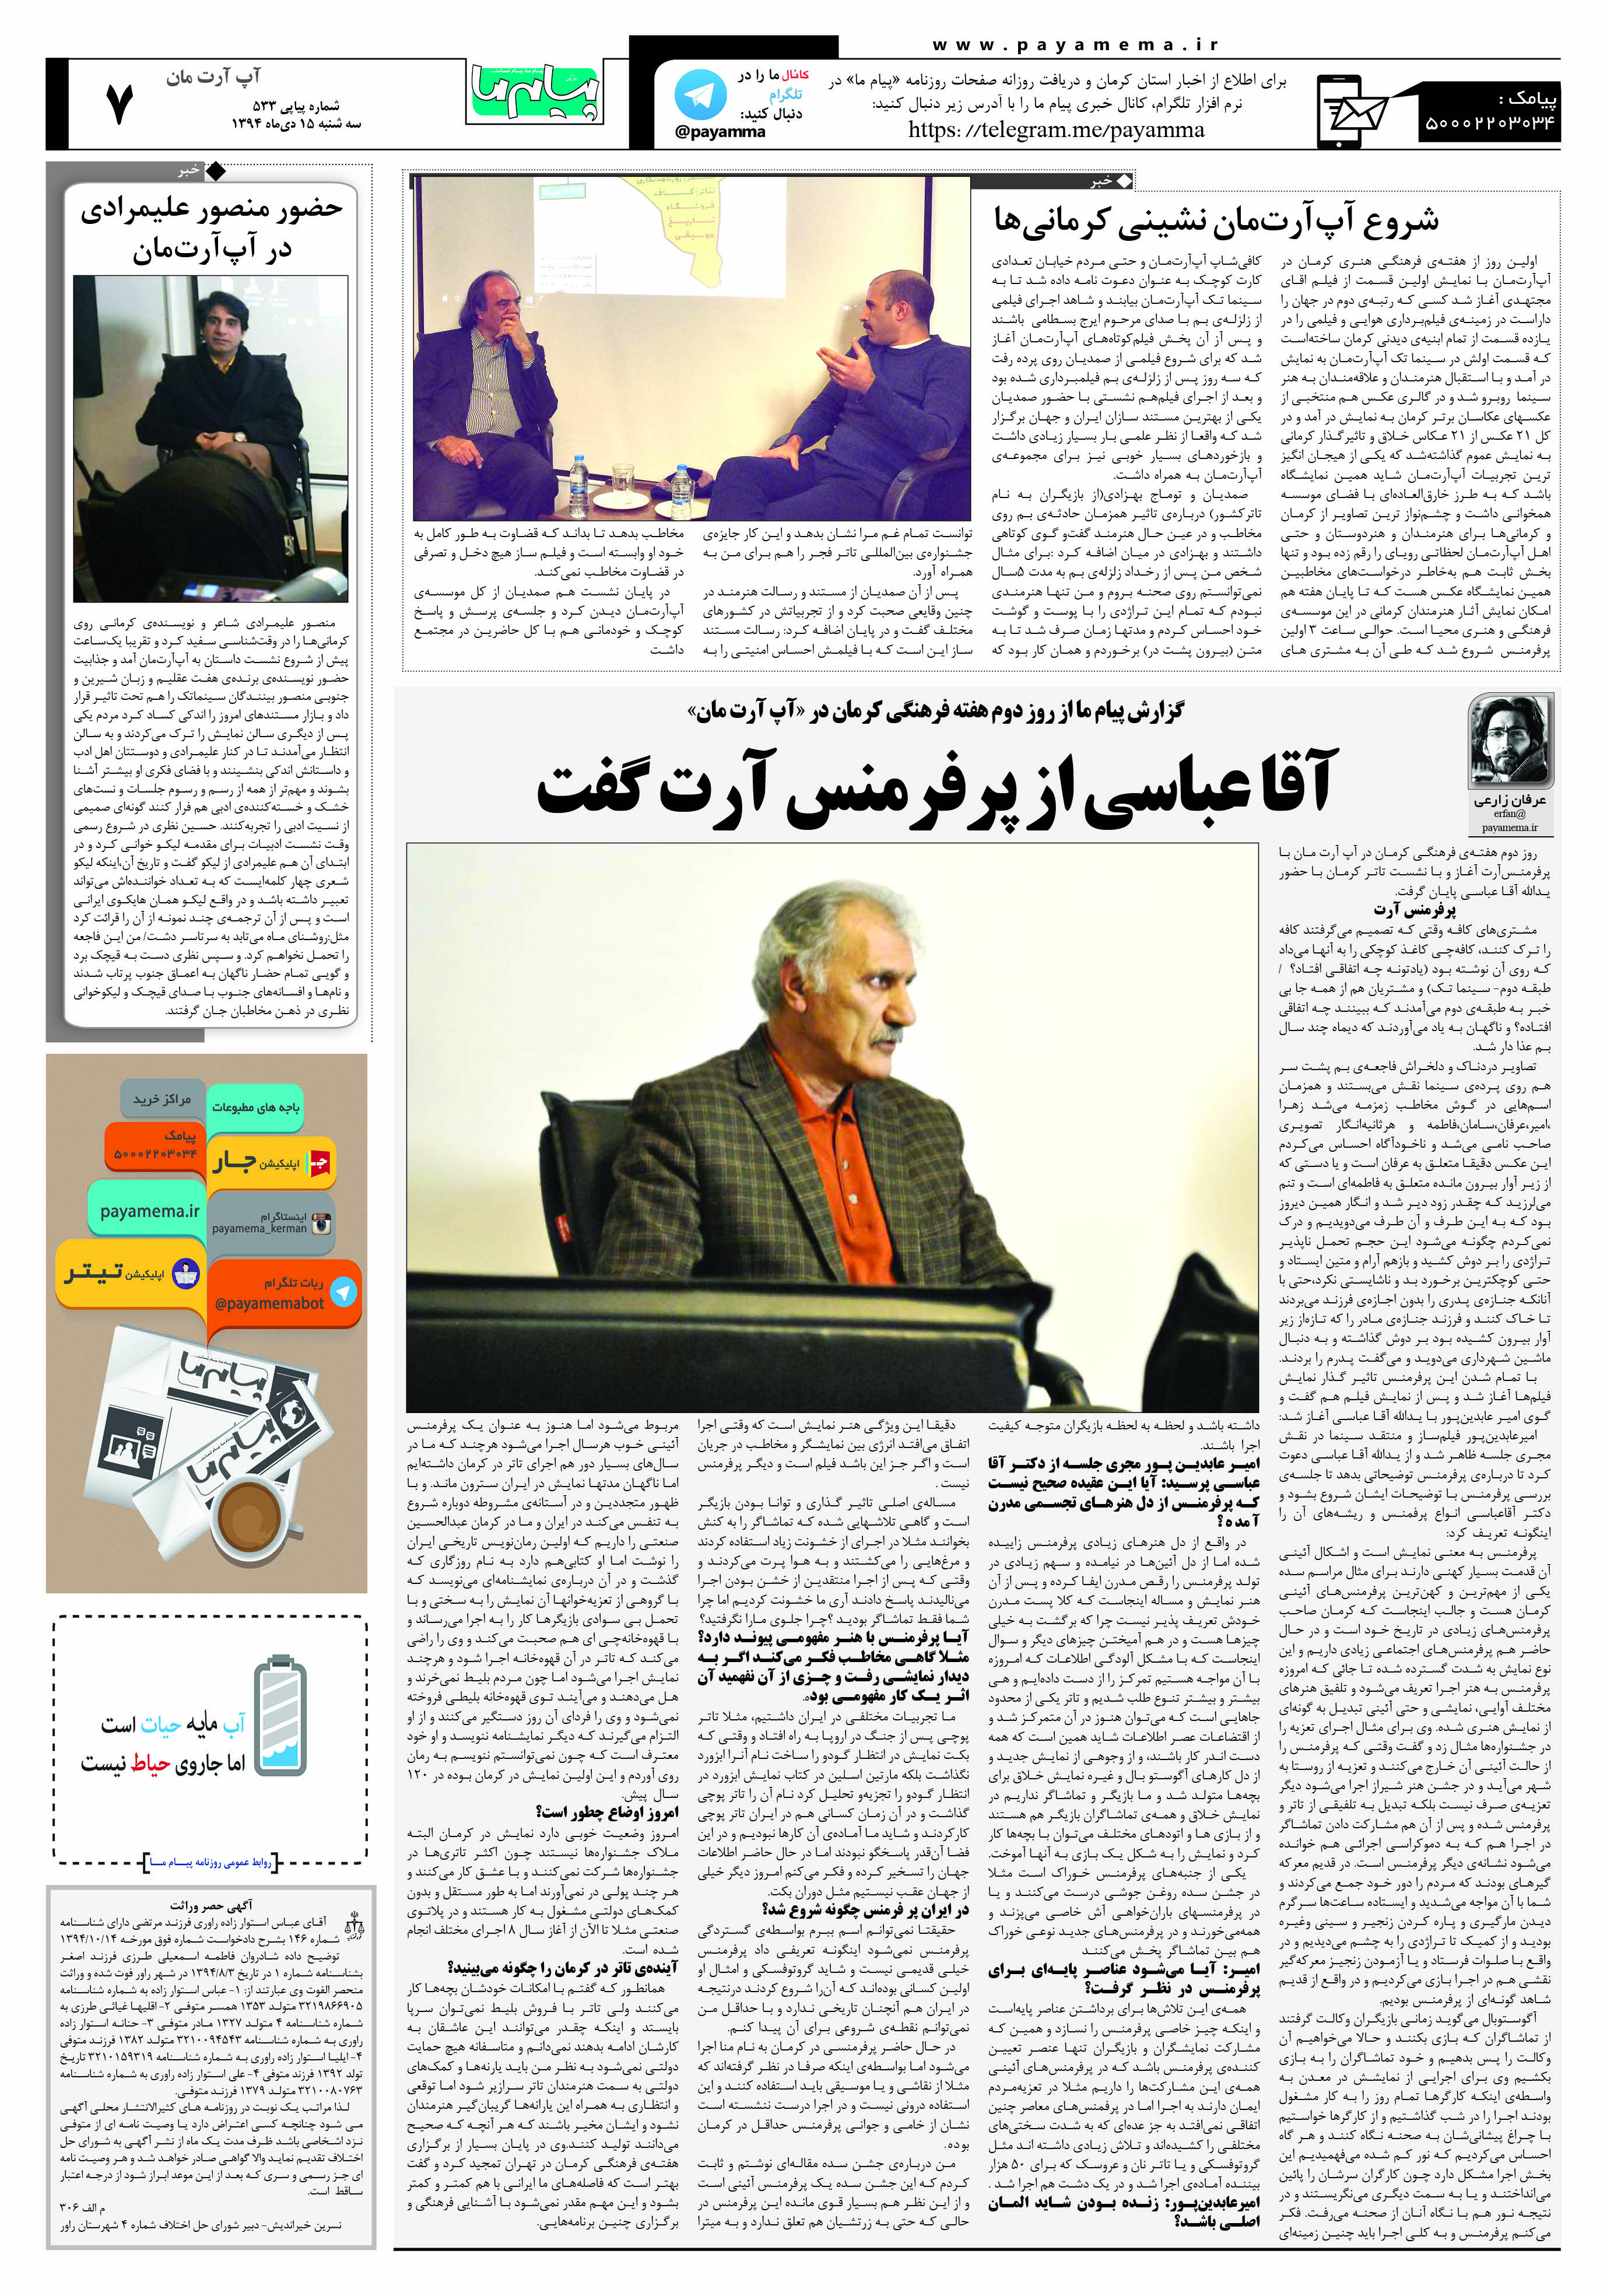 گزارش پیام ما از روز دوم هفته فرهنگی کرمان در «آپ آرت مان»/ آقا عباسی از پرفرمنس آرت گفت